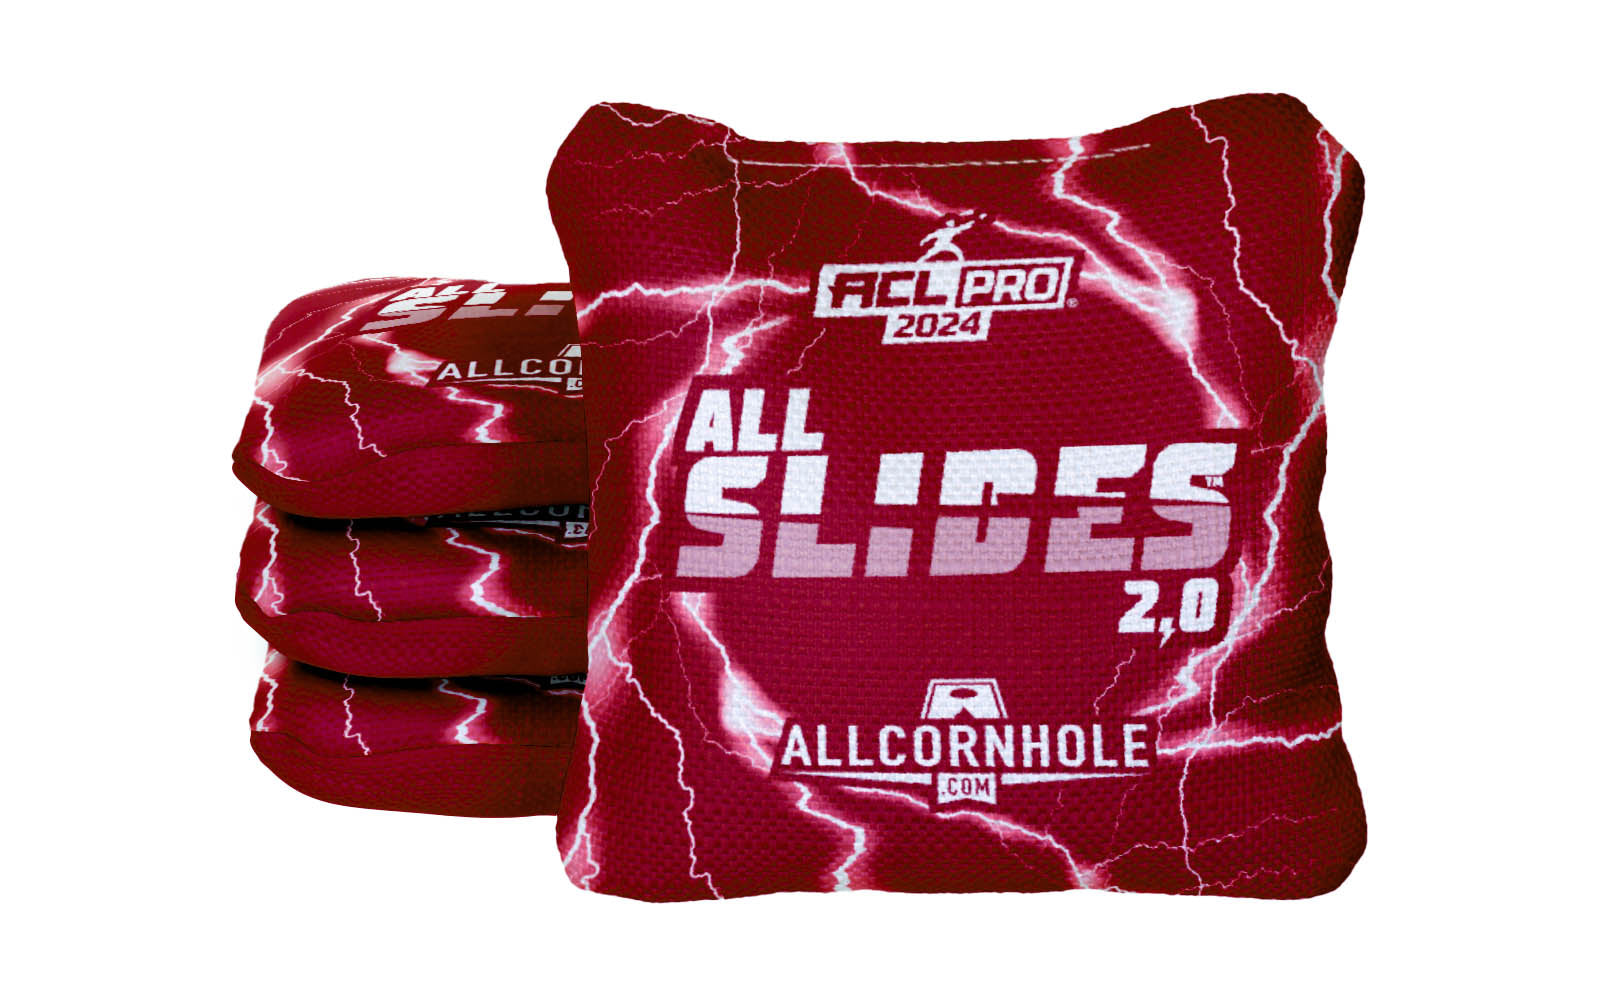 Officially Licensed Collegiate Cornhole Bags - AllCornhole All-Slide 2.0 - Set of 4 - University of Utah